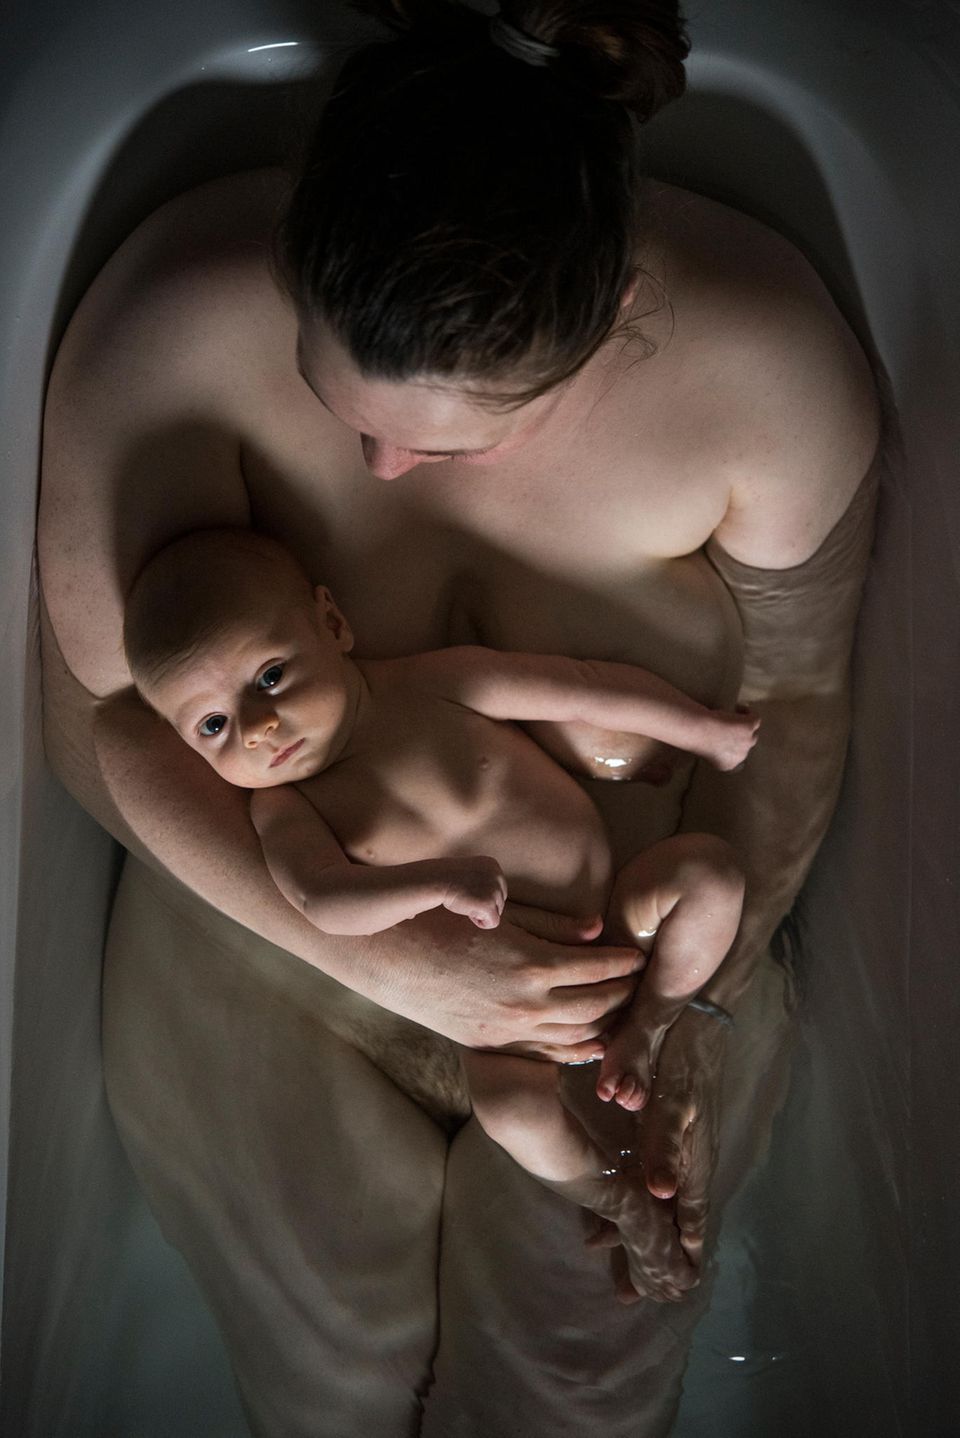 Hallo und Auf Wiedersehen: Mutter mit Neugeborenen in Wanne